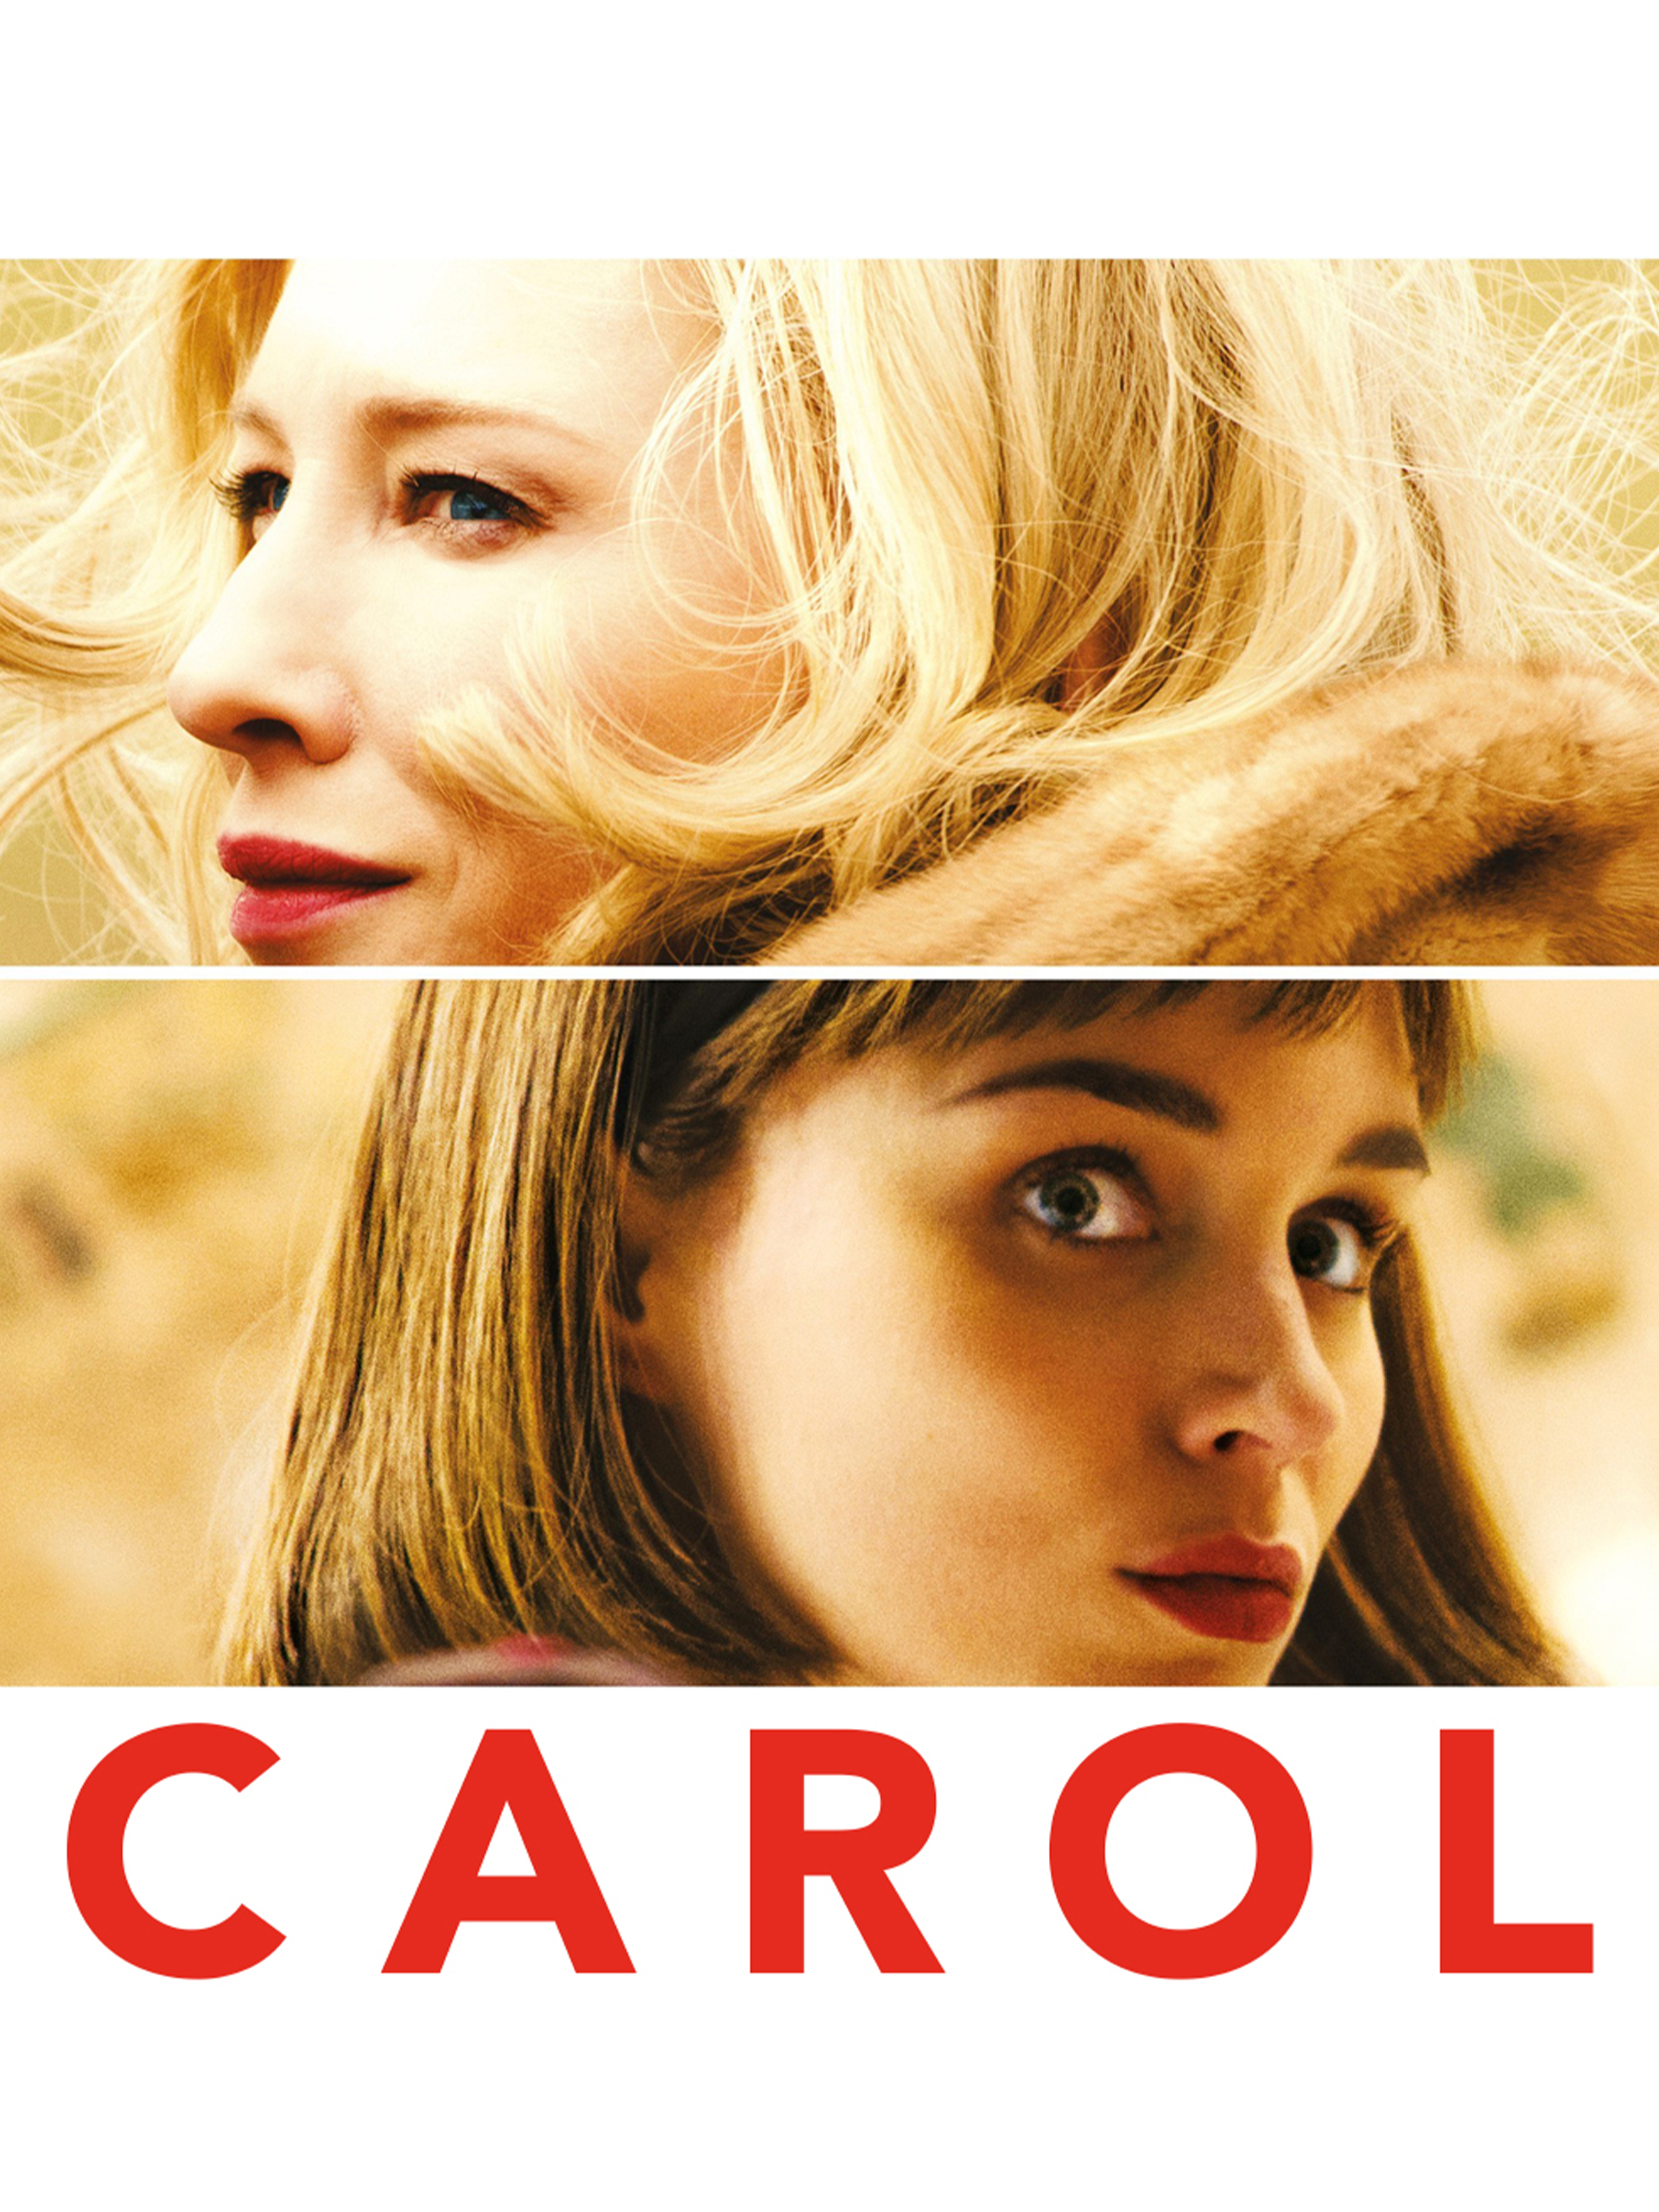 debbie nuttall recommends Carol Movie 2015 Watch Online